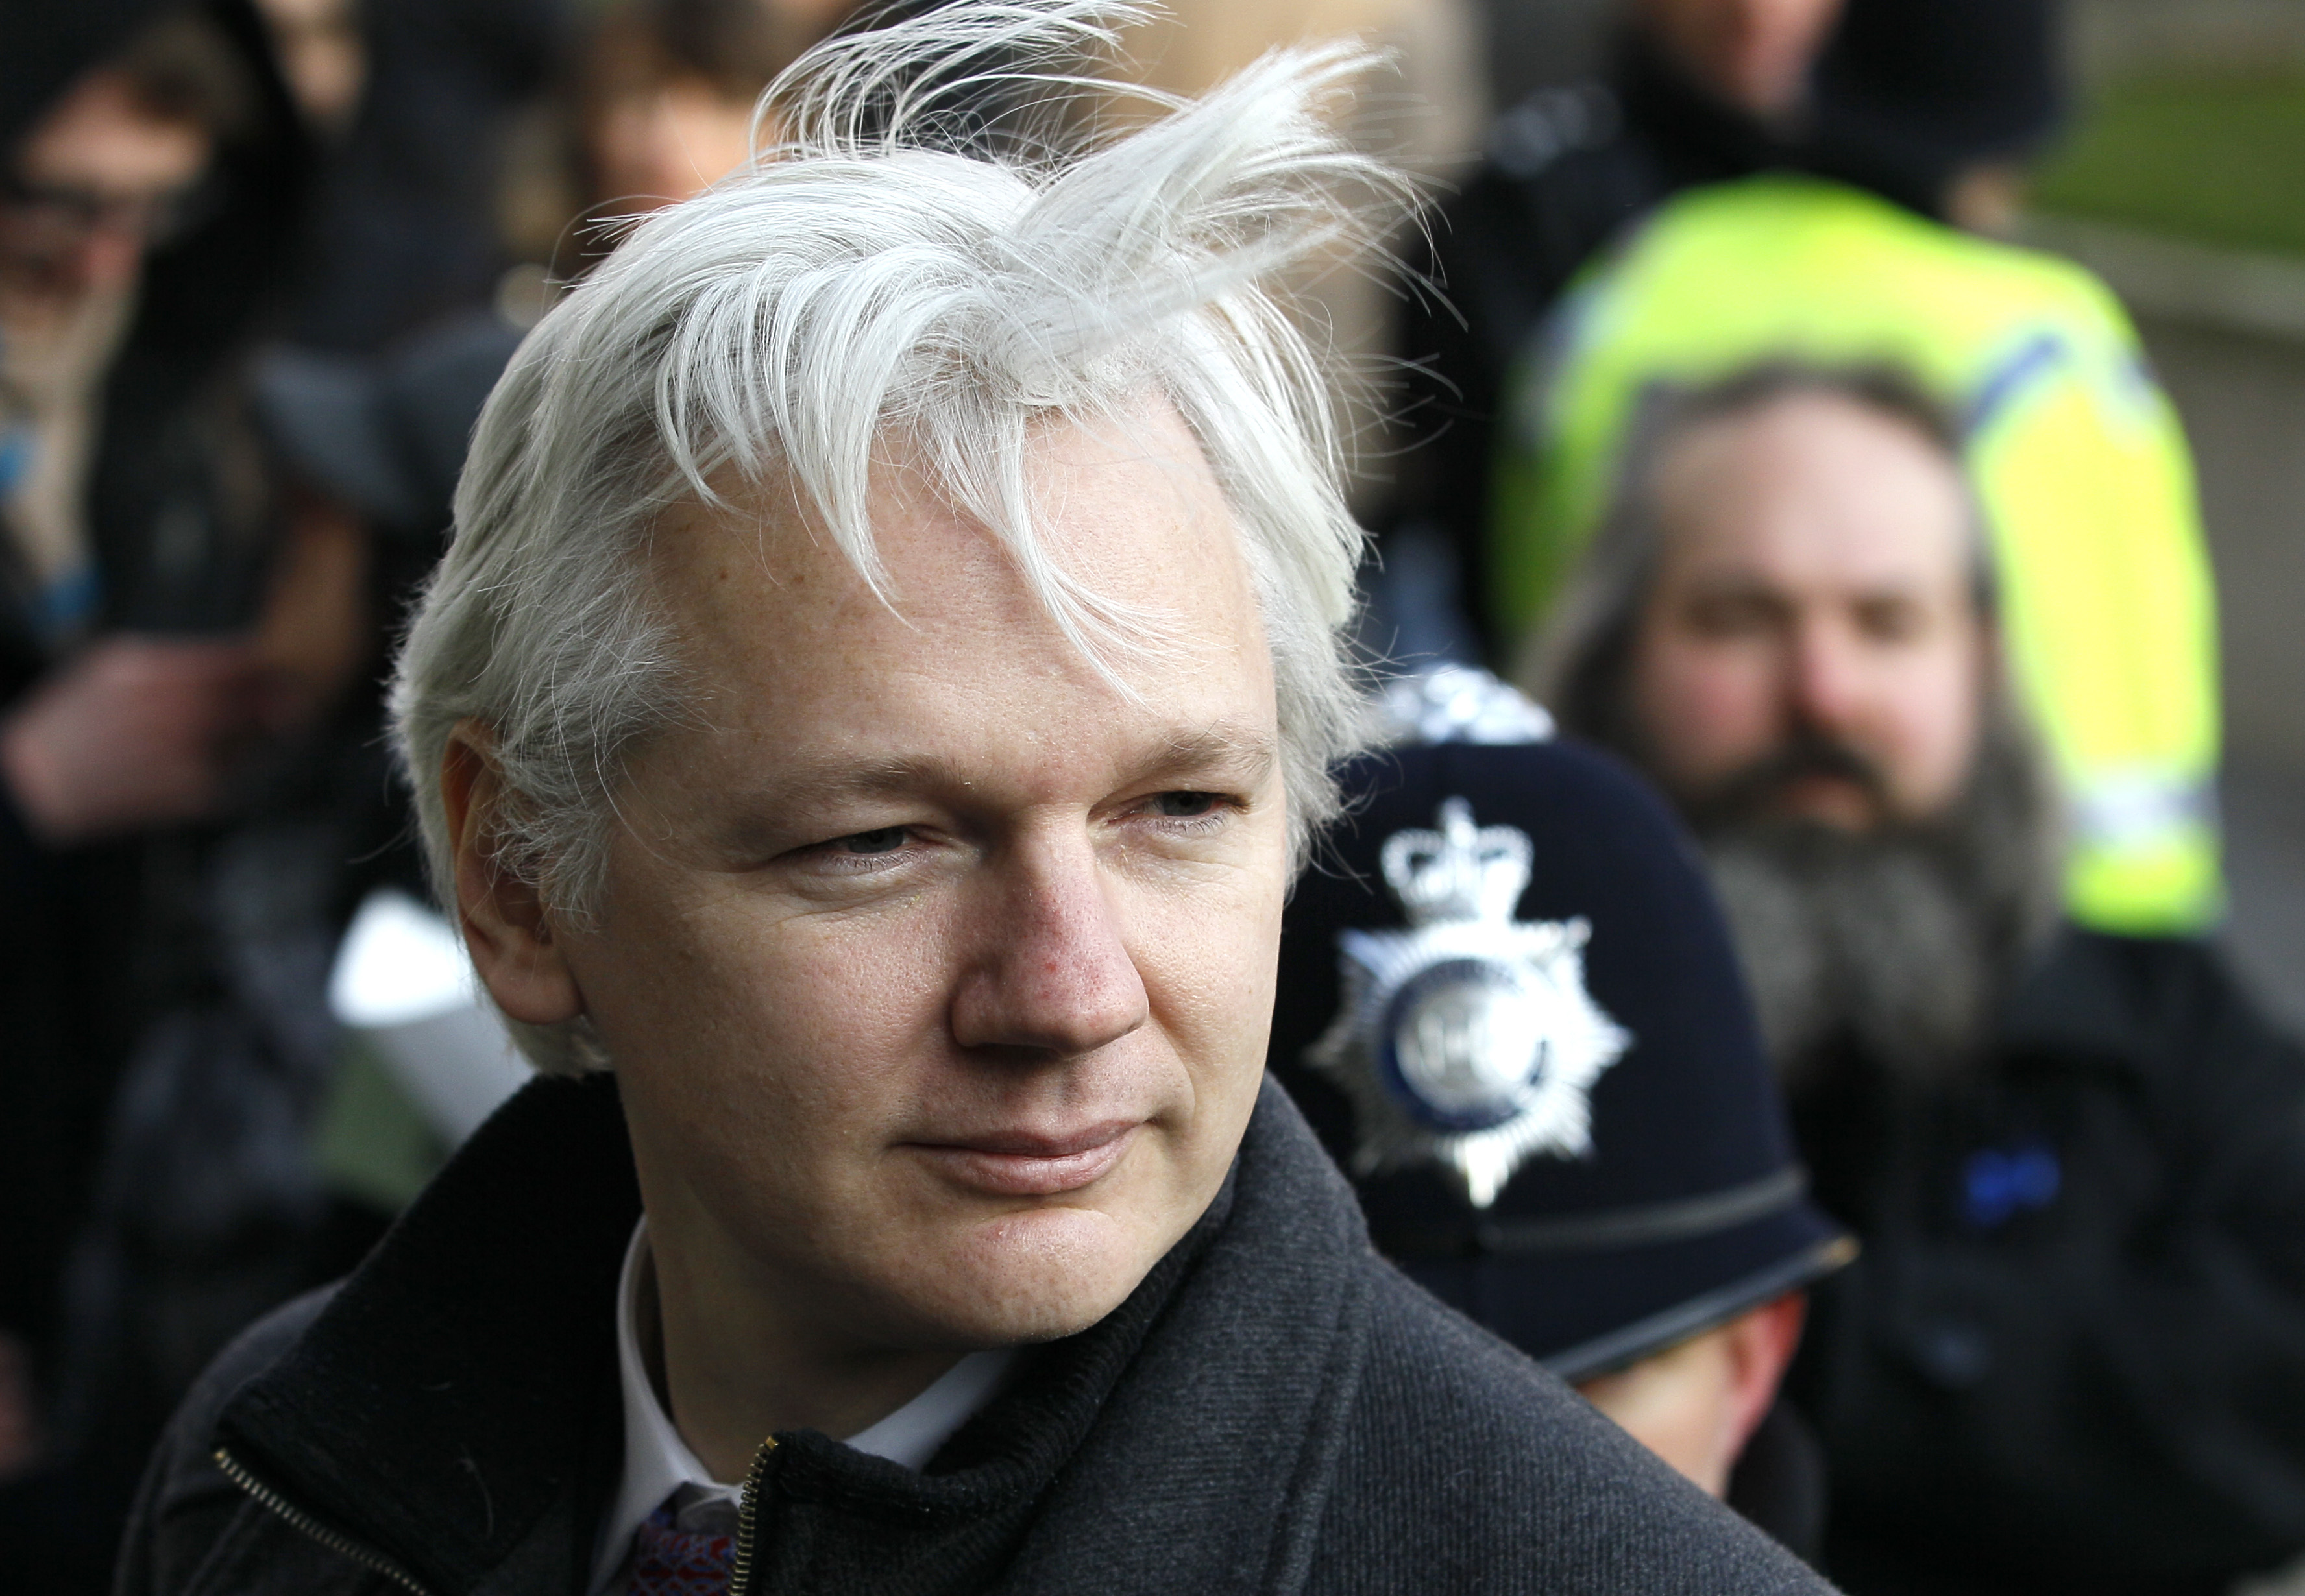 Efter att Assange brytit mot sin husarrest genom att bege sig till ambassaden kan åtal väckas mot honom.